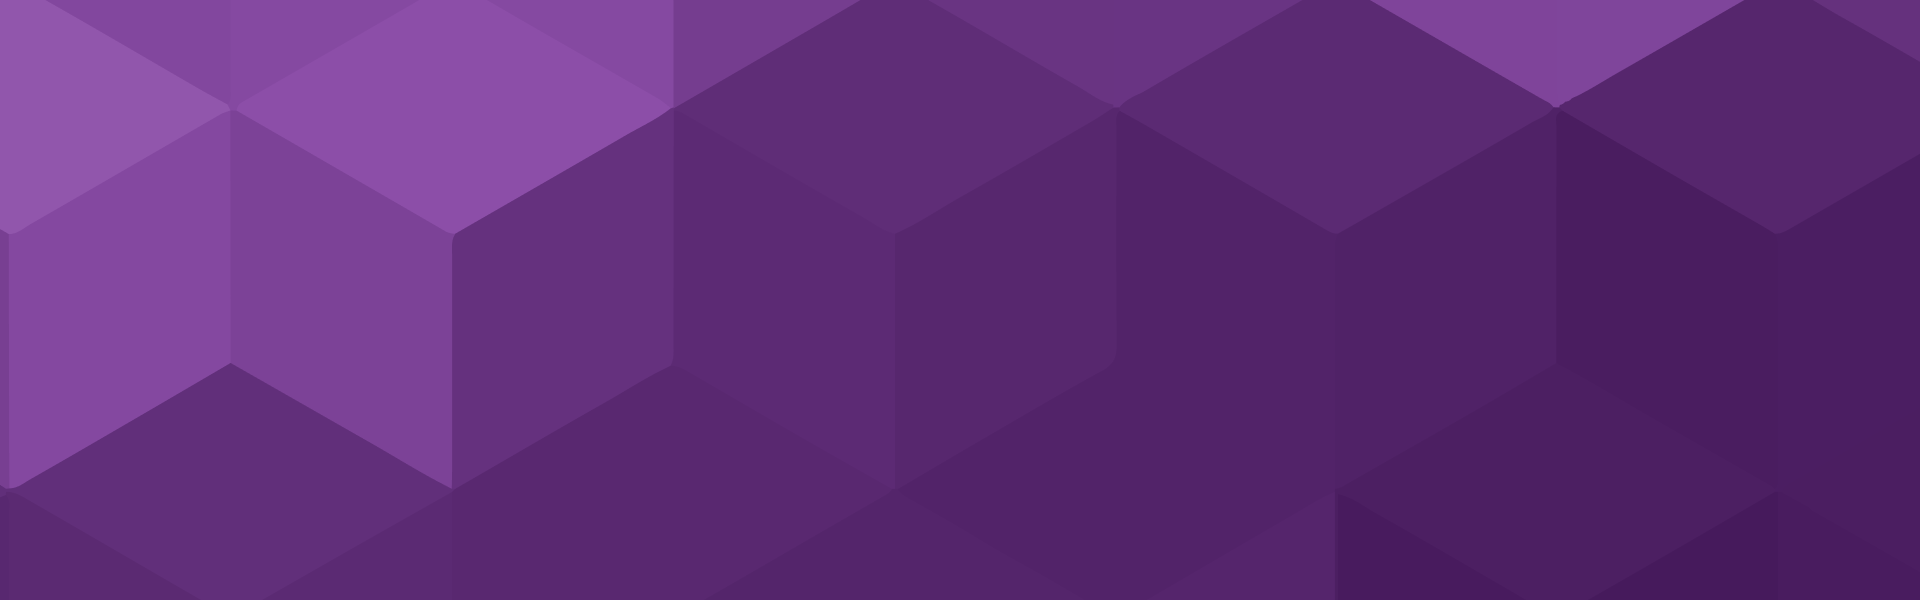 фон с рисунком фиолетового шестиугольника